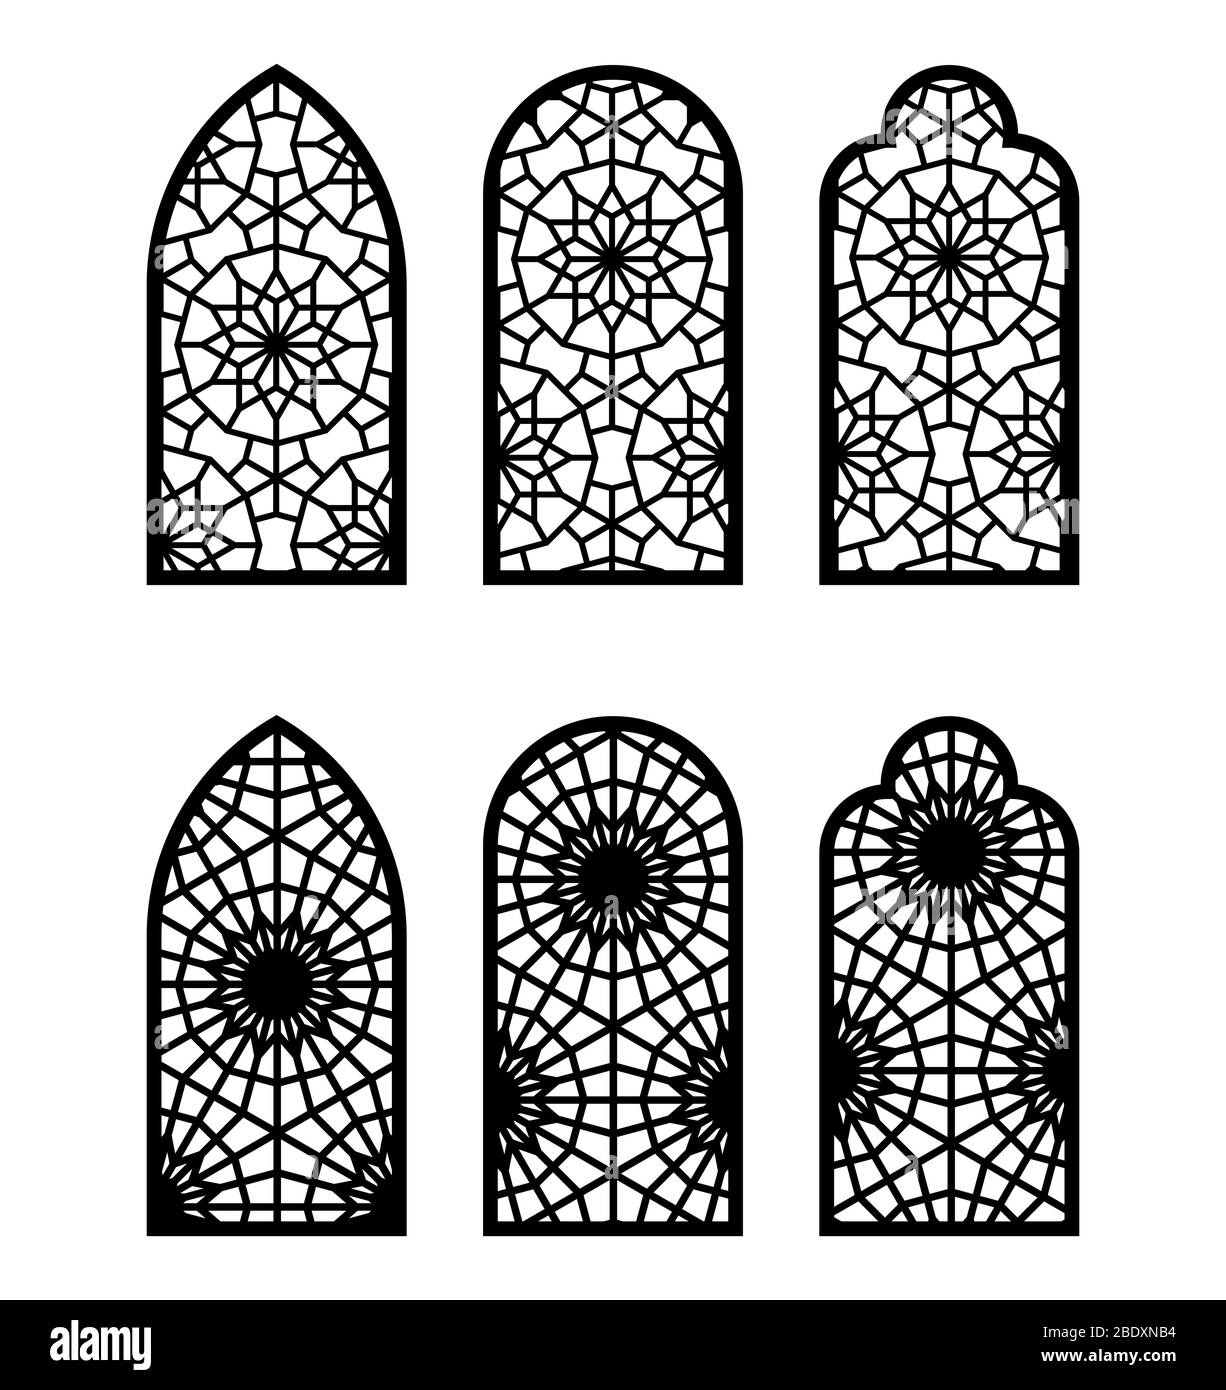 Fenêtre ou porte d'arche marocaine. Motif CNC, découpe au laser, jeu de modèles vectoriels pour décoration murale, pochoir, gravure de style marocain Illustration de Vecteur